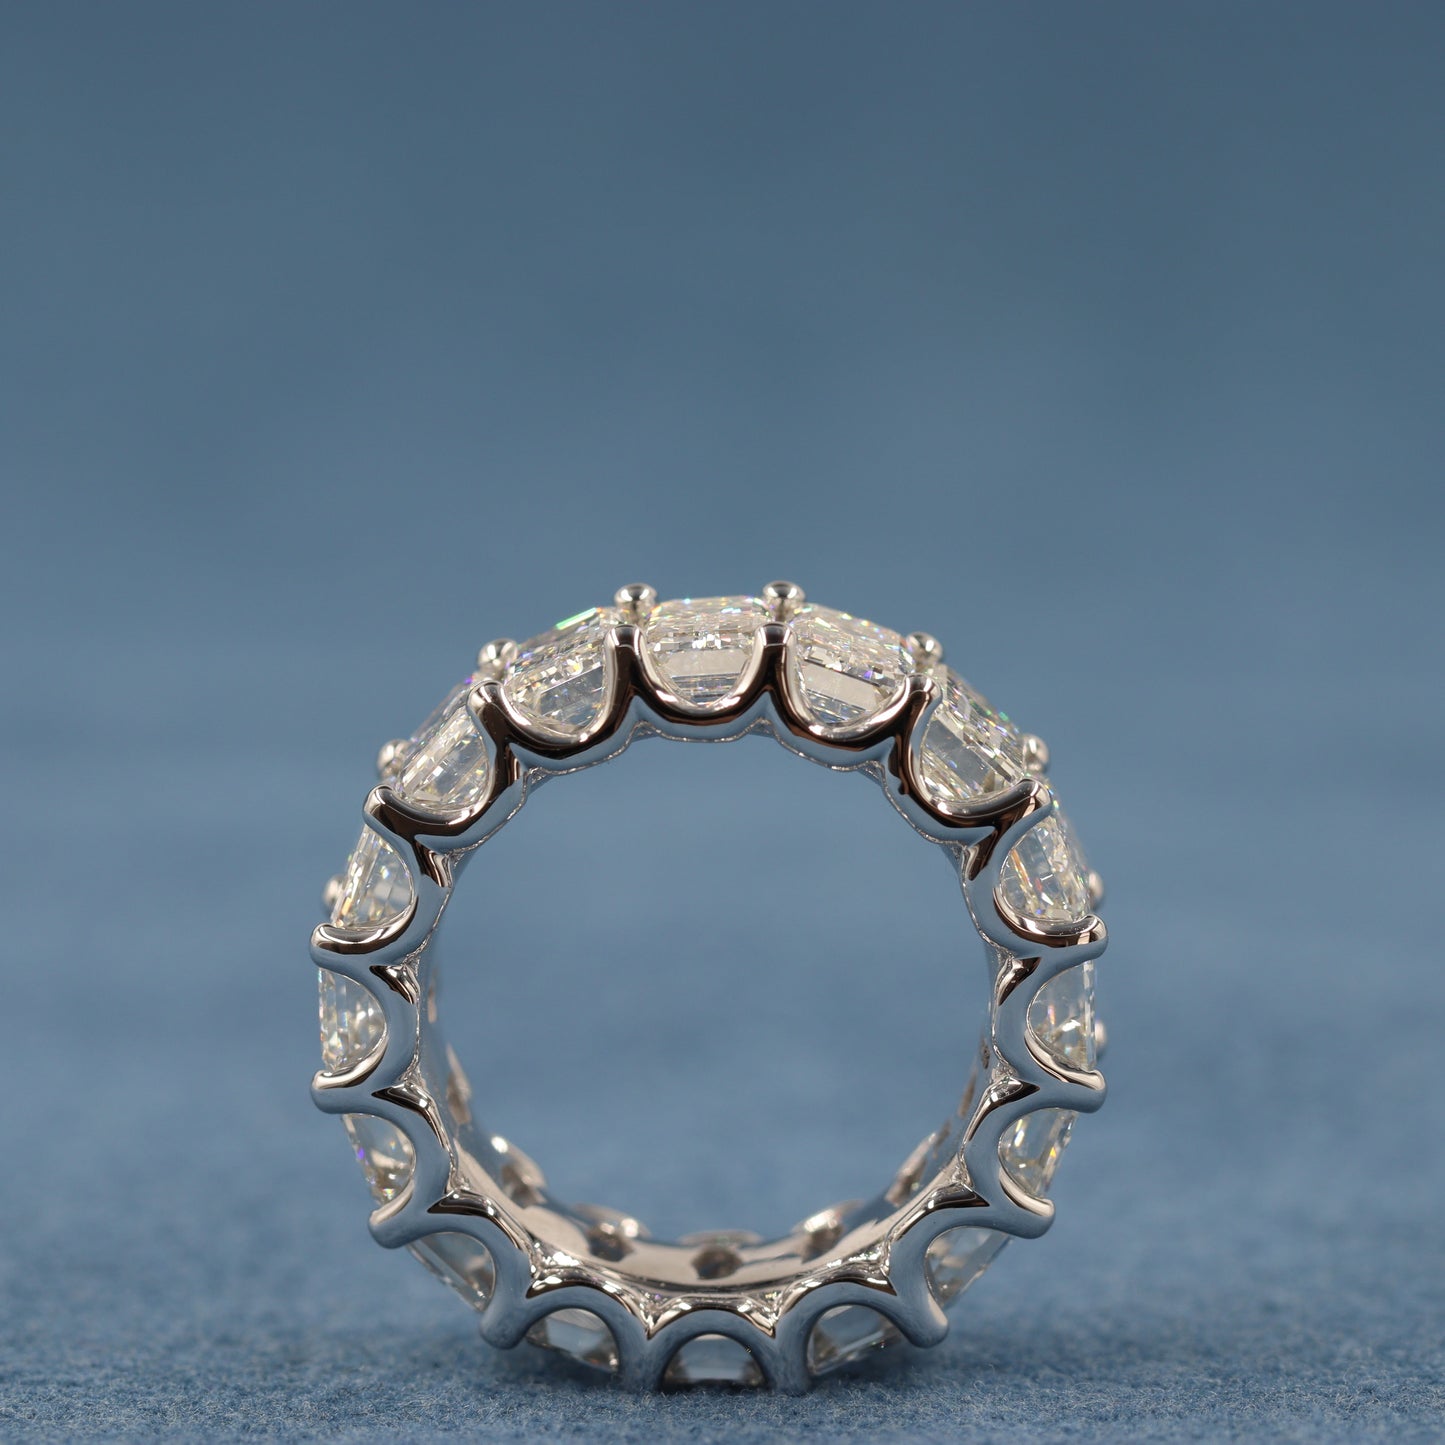 12ct Full Eternity luxury Emerald Cut Diamond Width 9mm Ring / Lab Grown Emerald Cut Diamond Wedding Ring / Anniversary gift